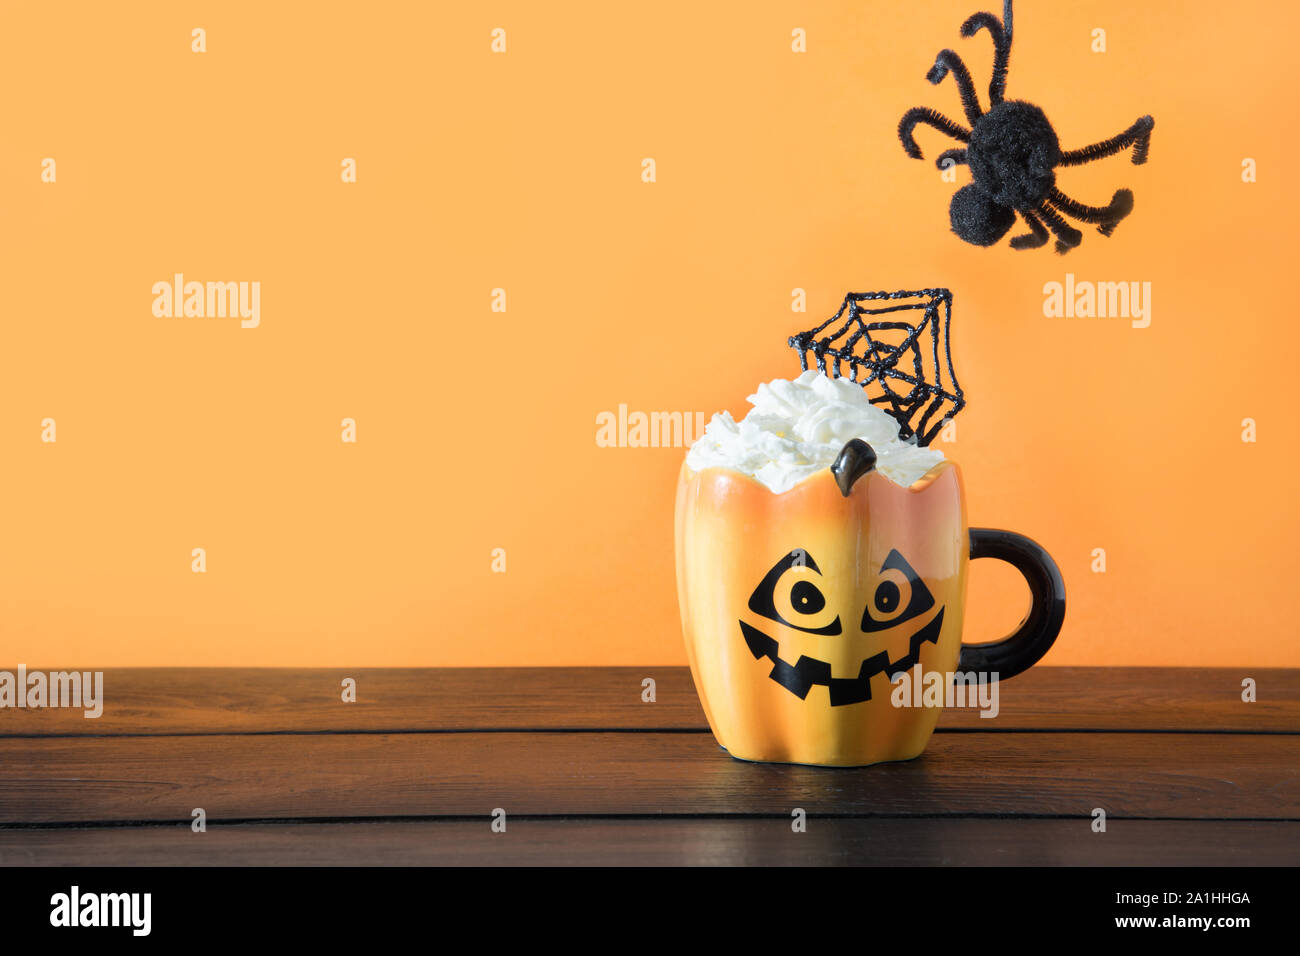 Tasse Kaffee Latte garnieren Spinnennetz und kommenden schwarze Spinne.  Halloween Urlaub auf hölzernen Tisch Stockfotografie - Alamy